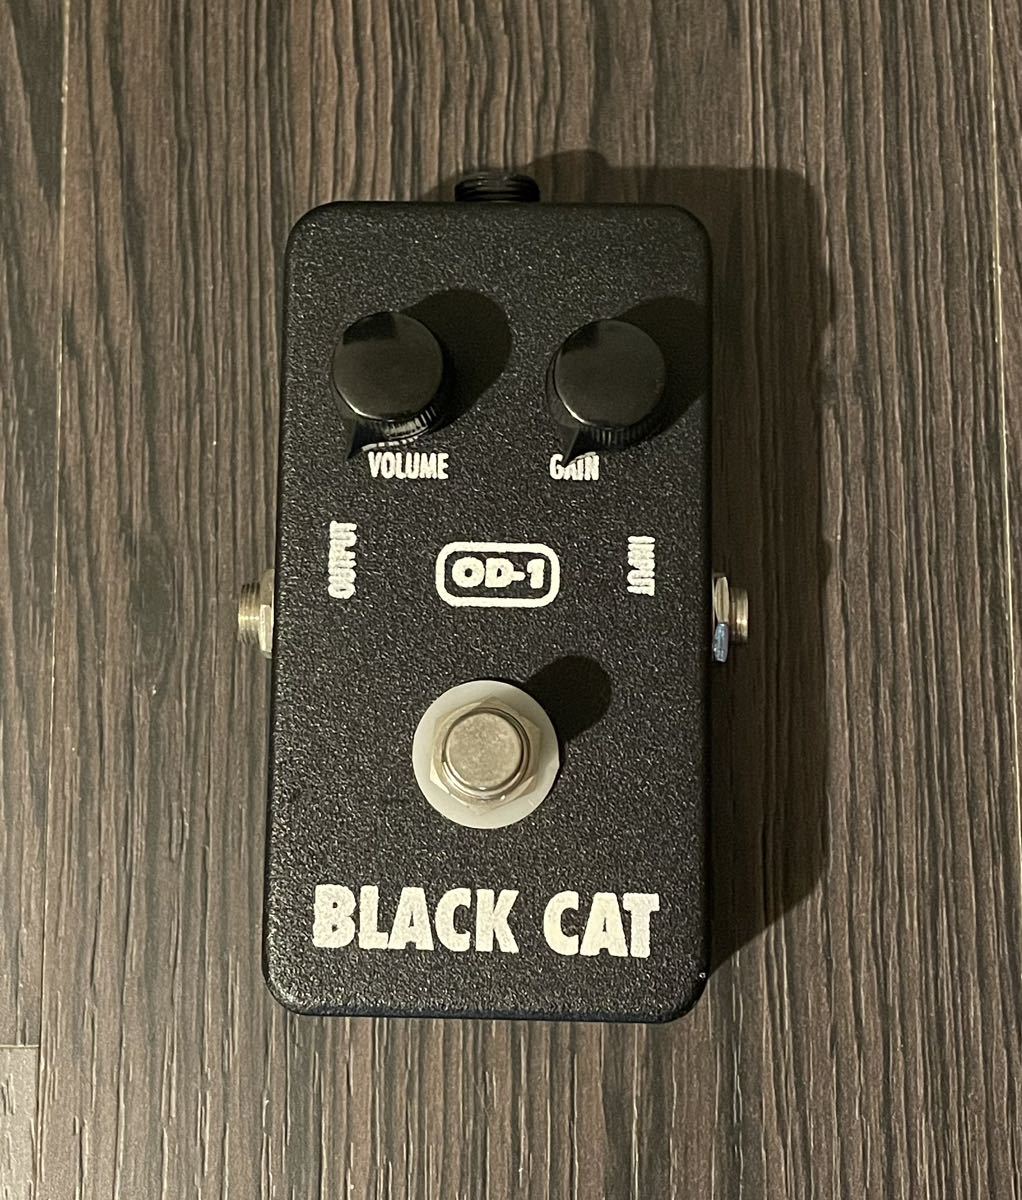 BLACK CAT OD-1 中古LED無し初期型ファズFUZZ オーバードライブ